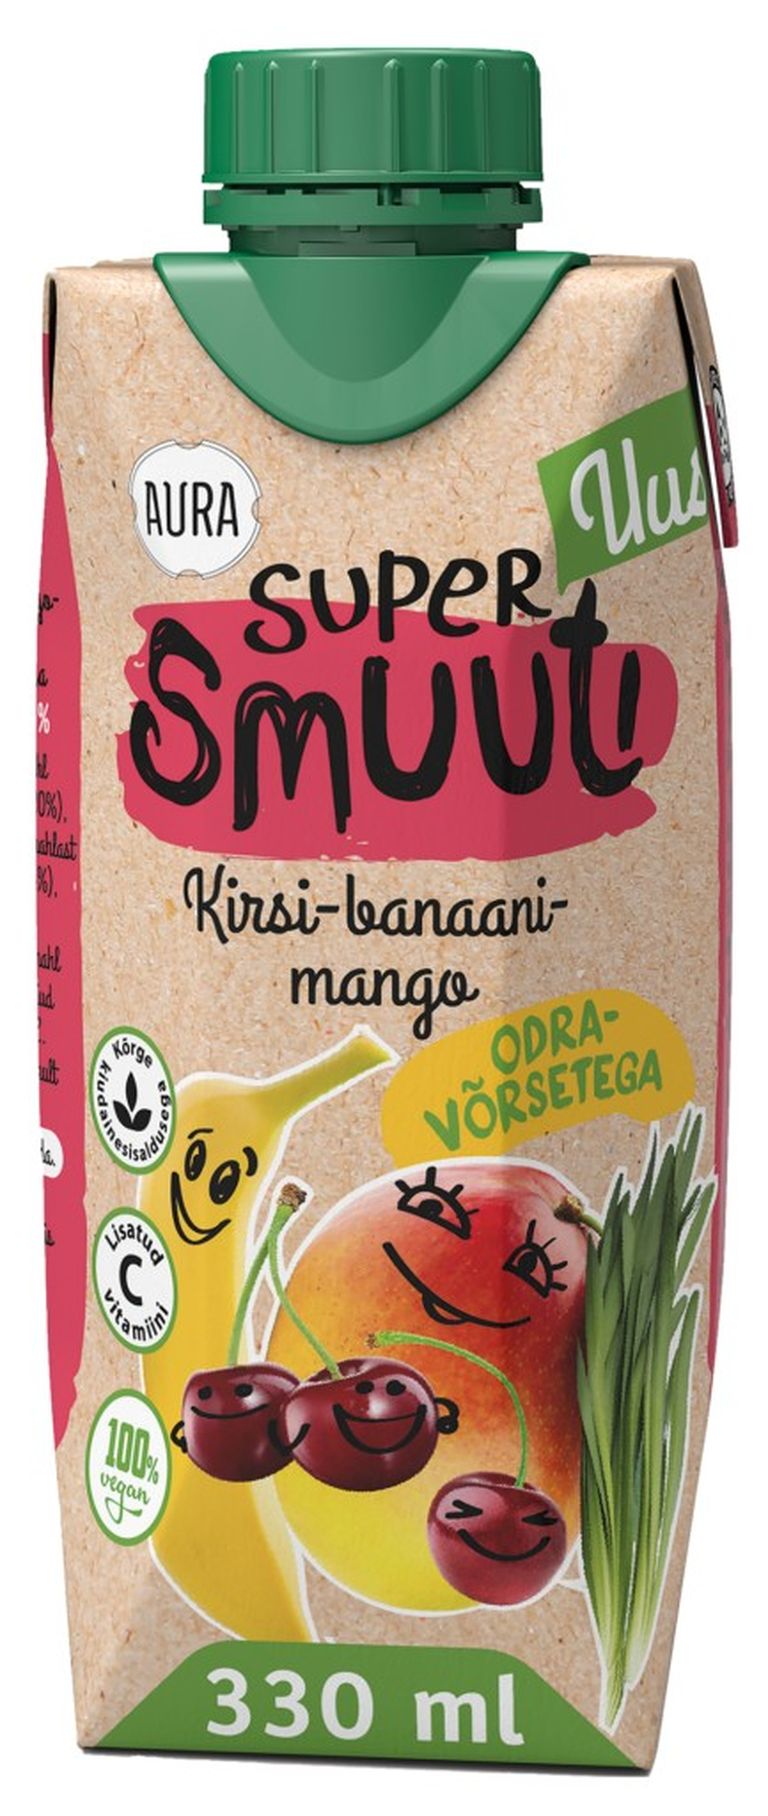 Eesti parima mittealkohoolse joogi tiitli pälvis A. Le Coqi Aura kirsi-banaani-mangosupersmuuti odravõrsetega.